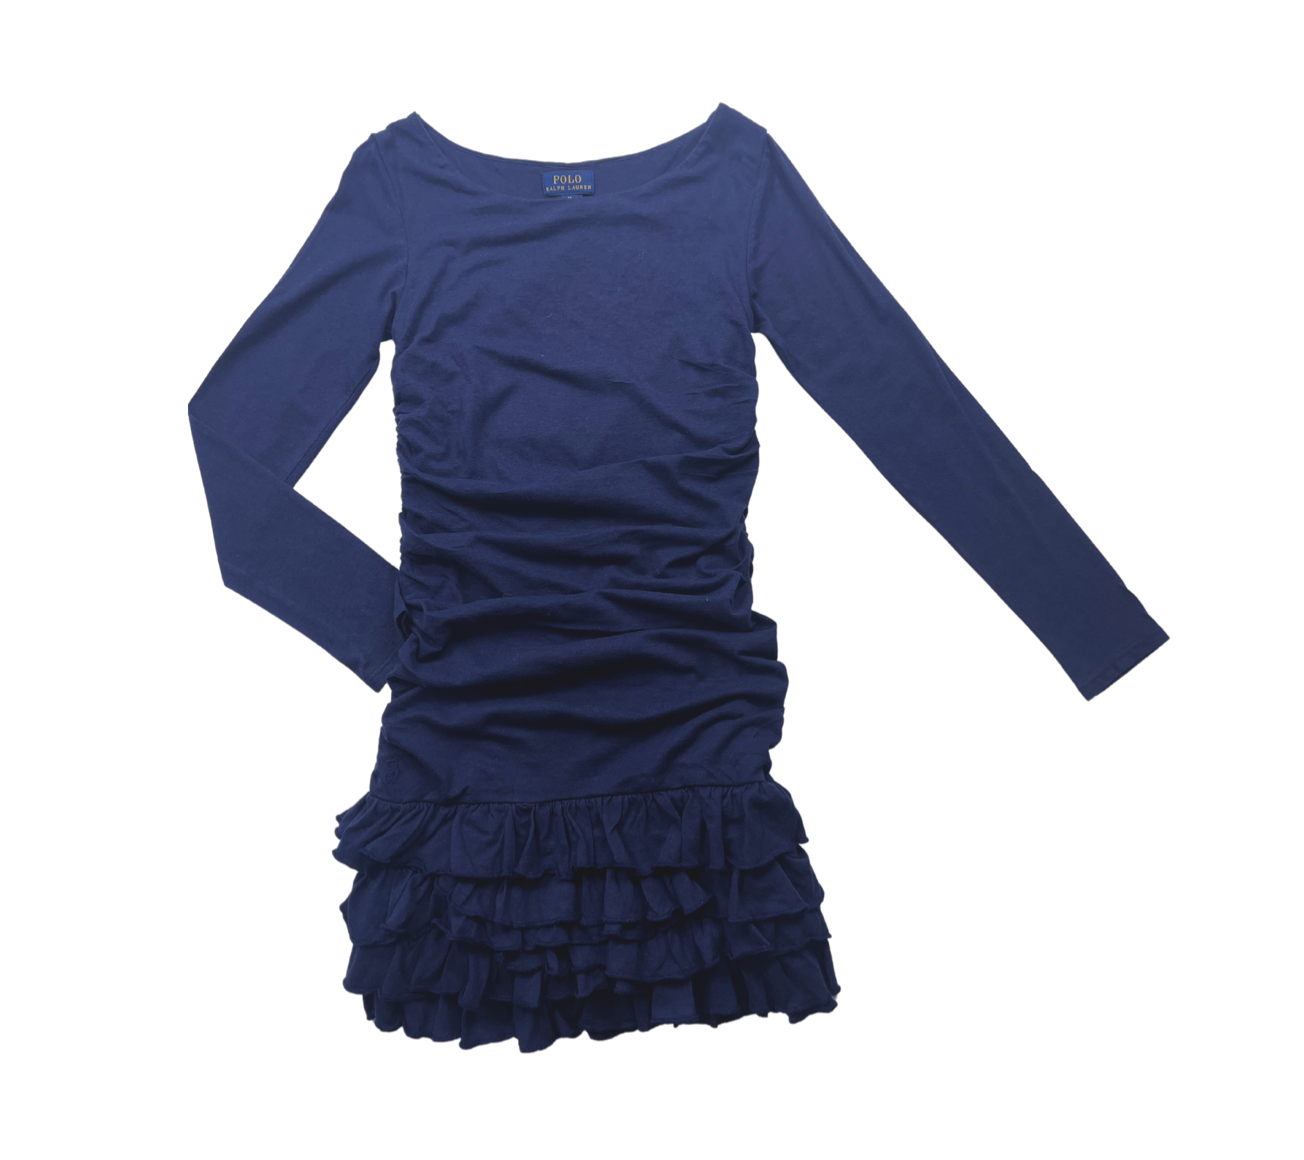 RALPH LAUREN - Robe bleu marine plissée manches longues - 8/10 ans